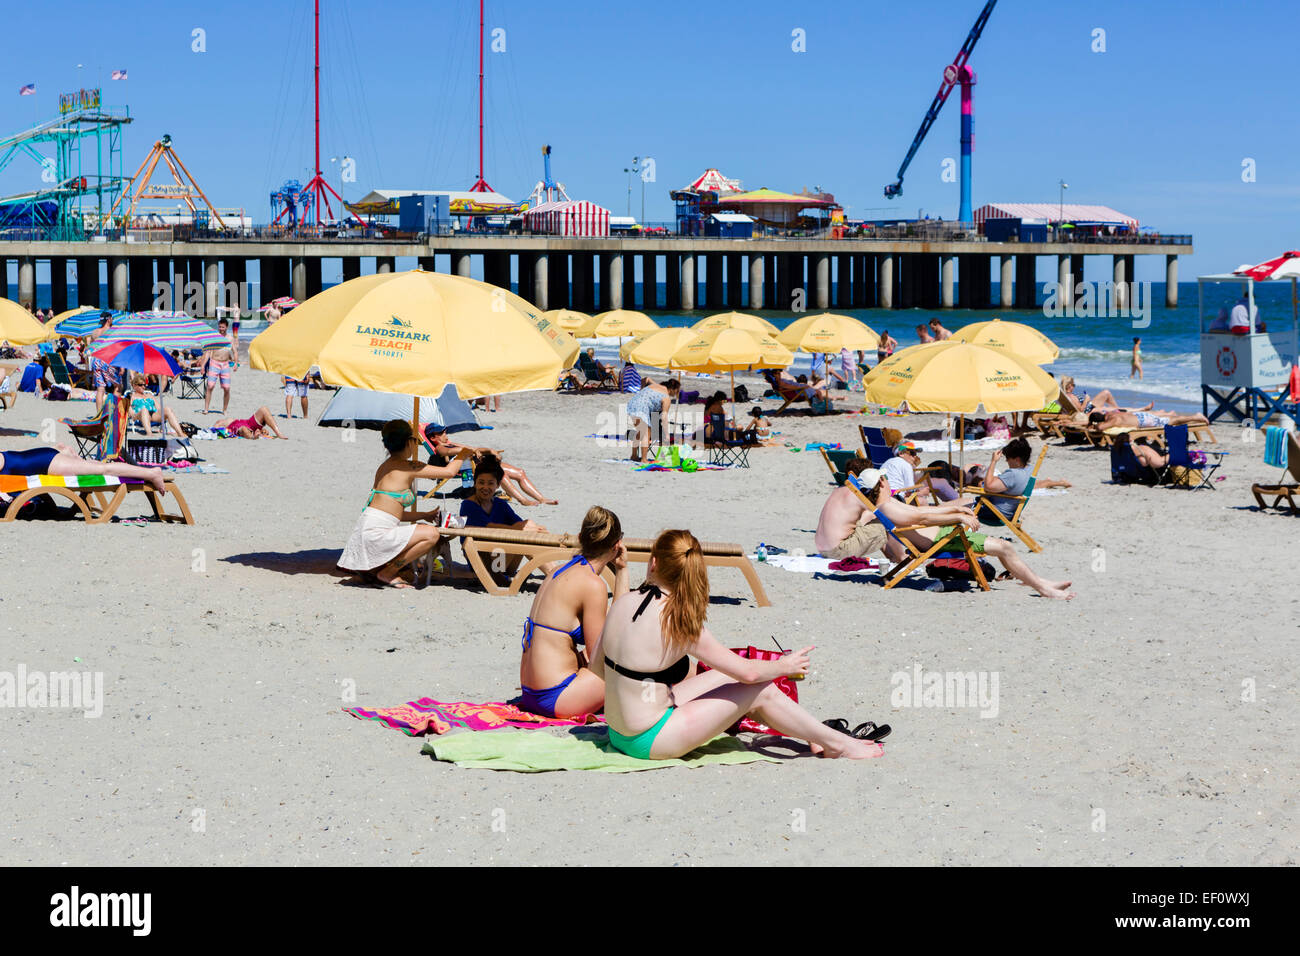 Giovani donne sulla spiaggia di fronte al molo di acciaio, Atlantic City, New Jersey, STATI UNITI D'AMERICA Foto Stock